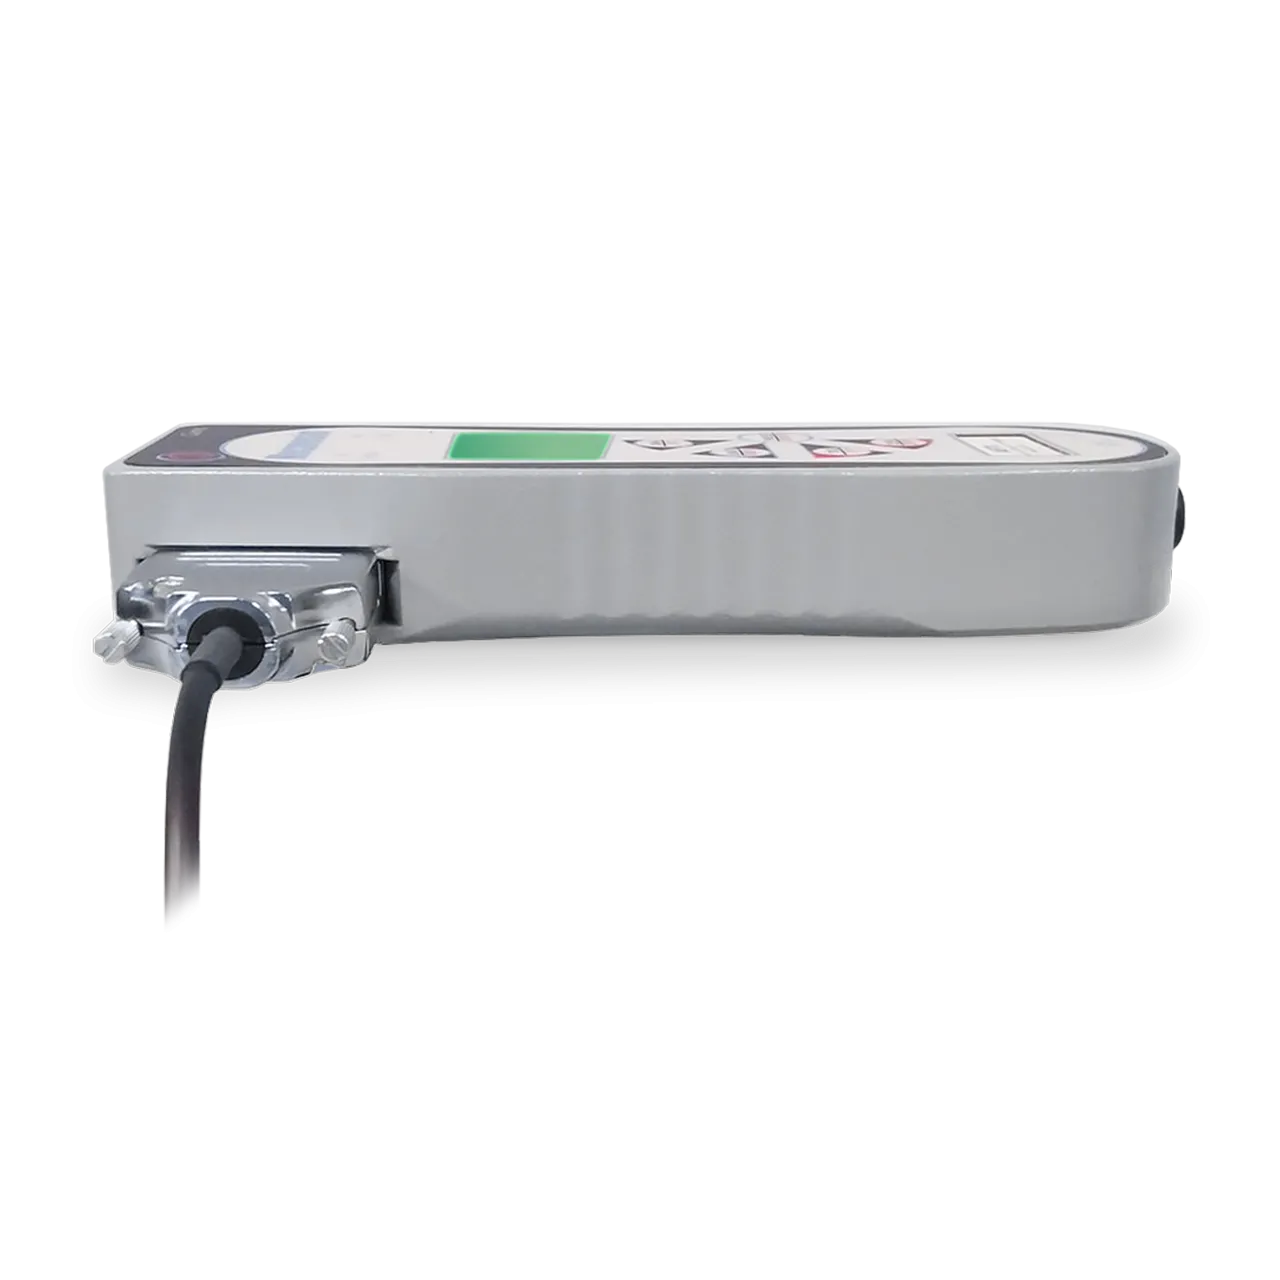 AFTI-Anzeigegerät auf der Seite gelegt mit Schnittstelle zum Anschluss des Sensors